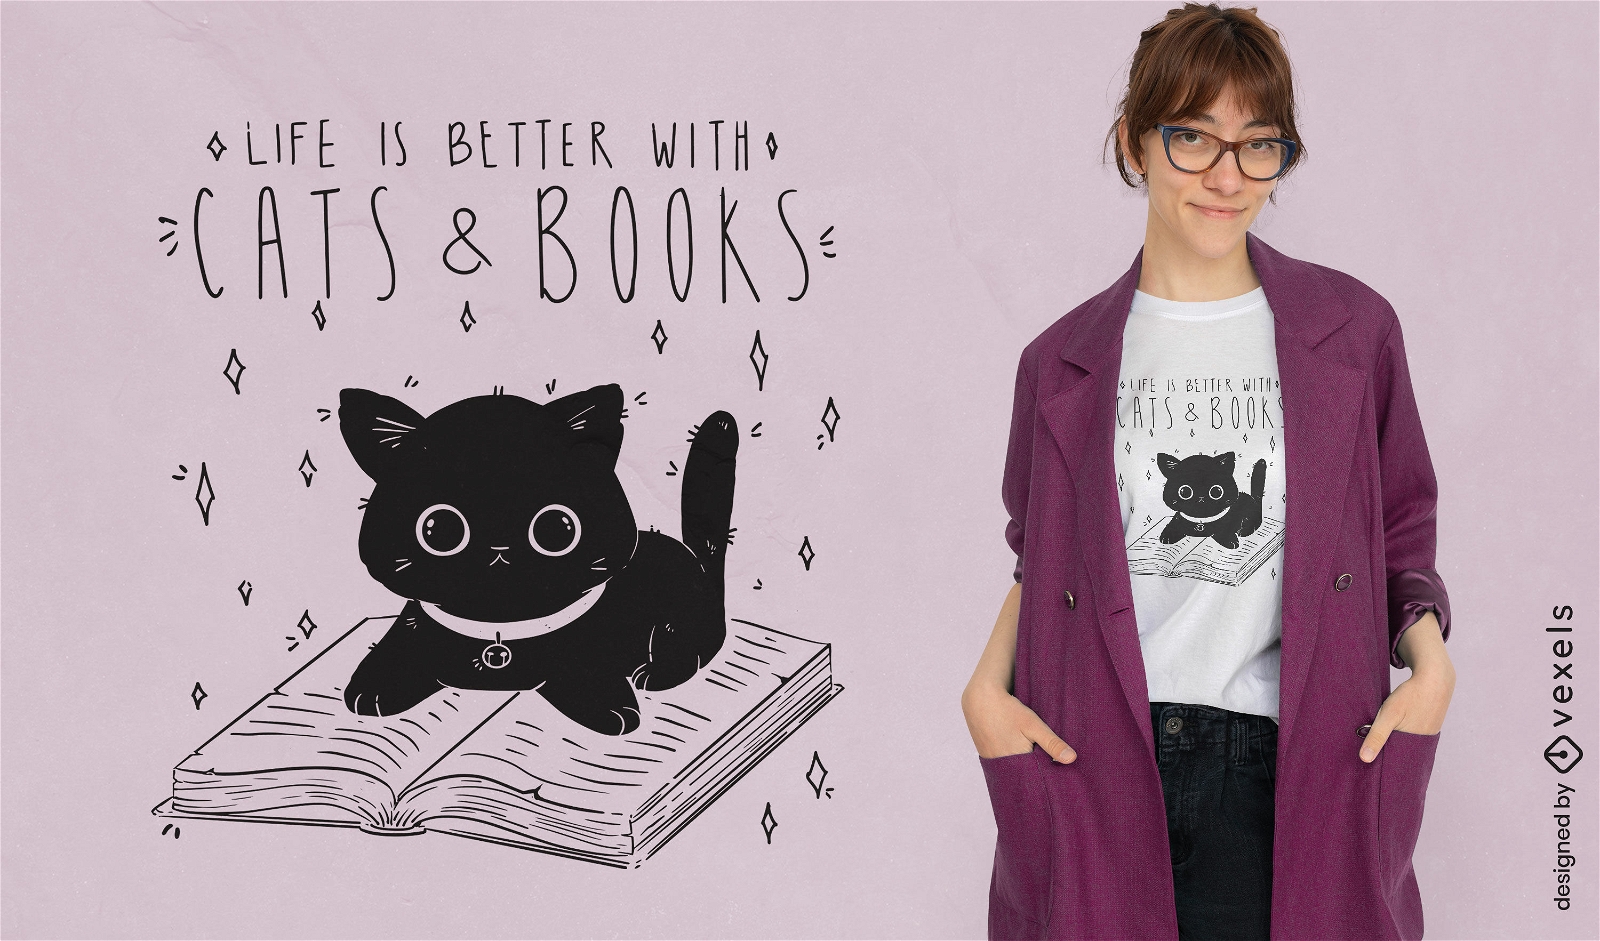 Dise?o de camiseta de gatos y libros.